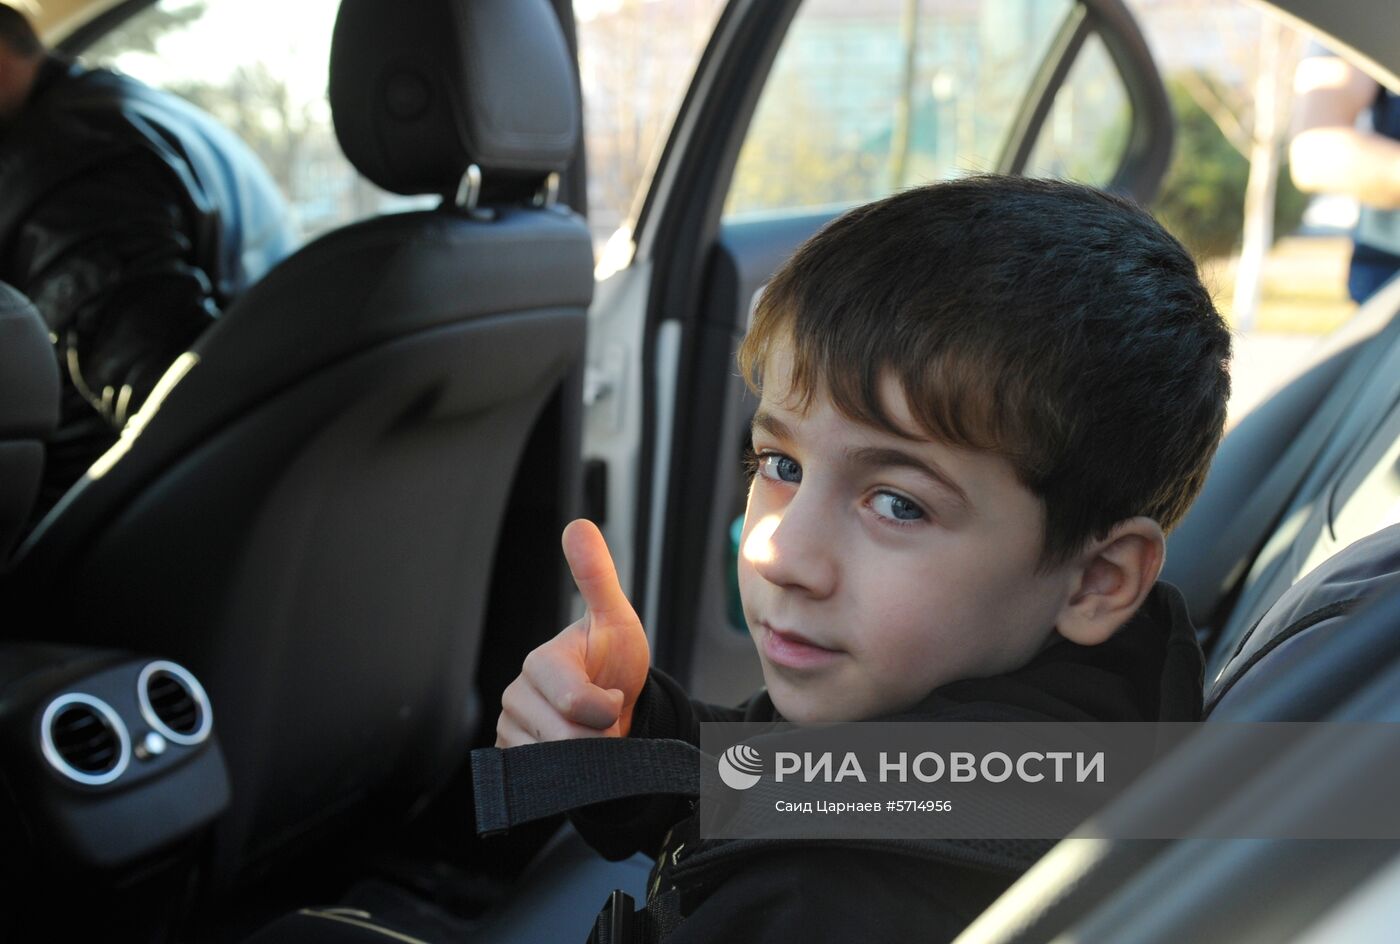 Попытка установления рекорда по отжиманию пятилетним мальчиком из Чечни